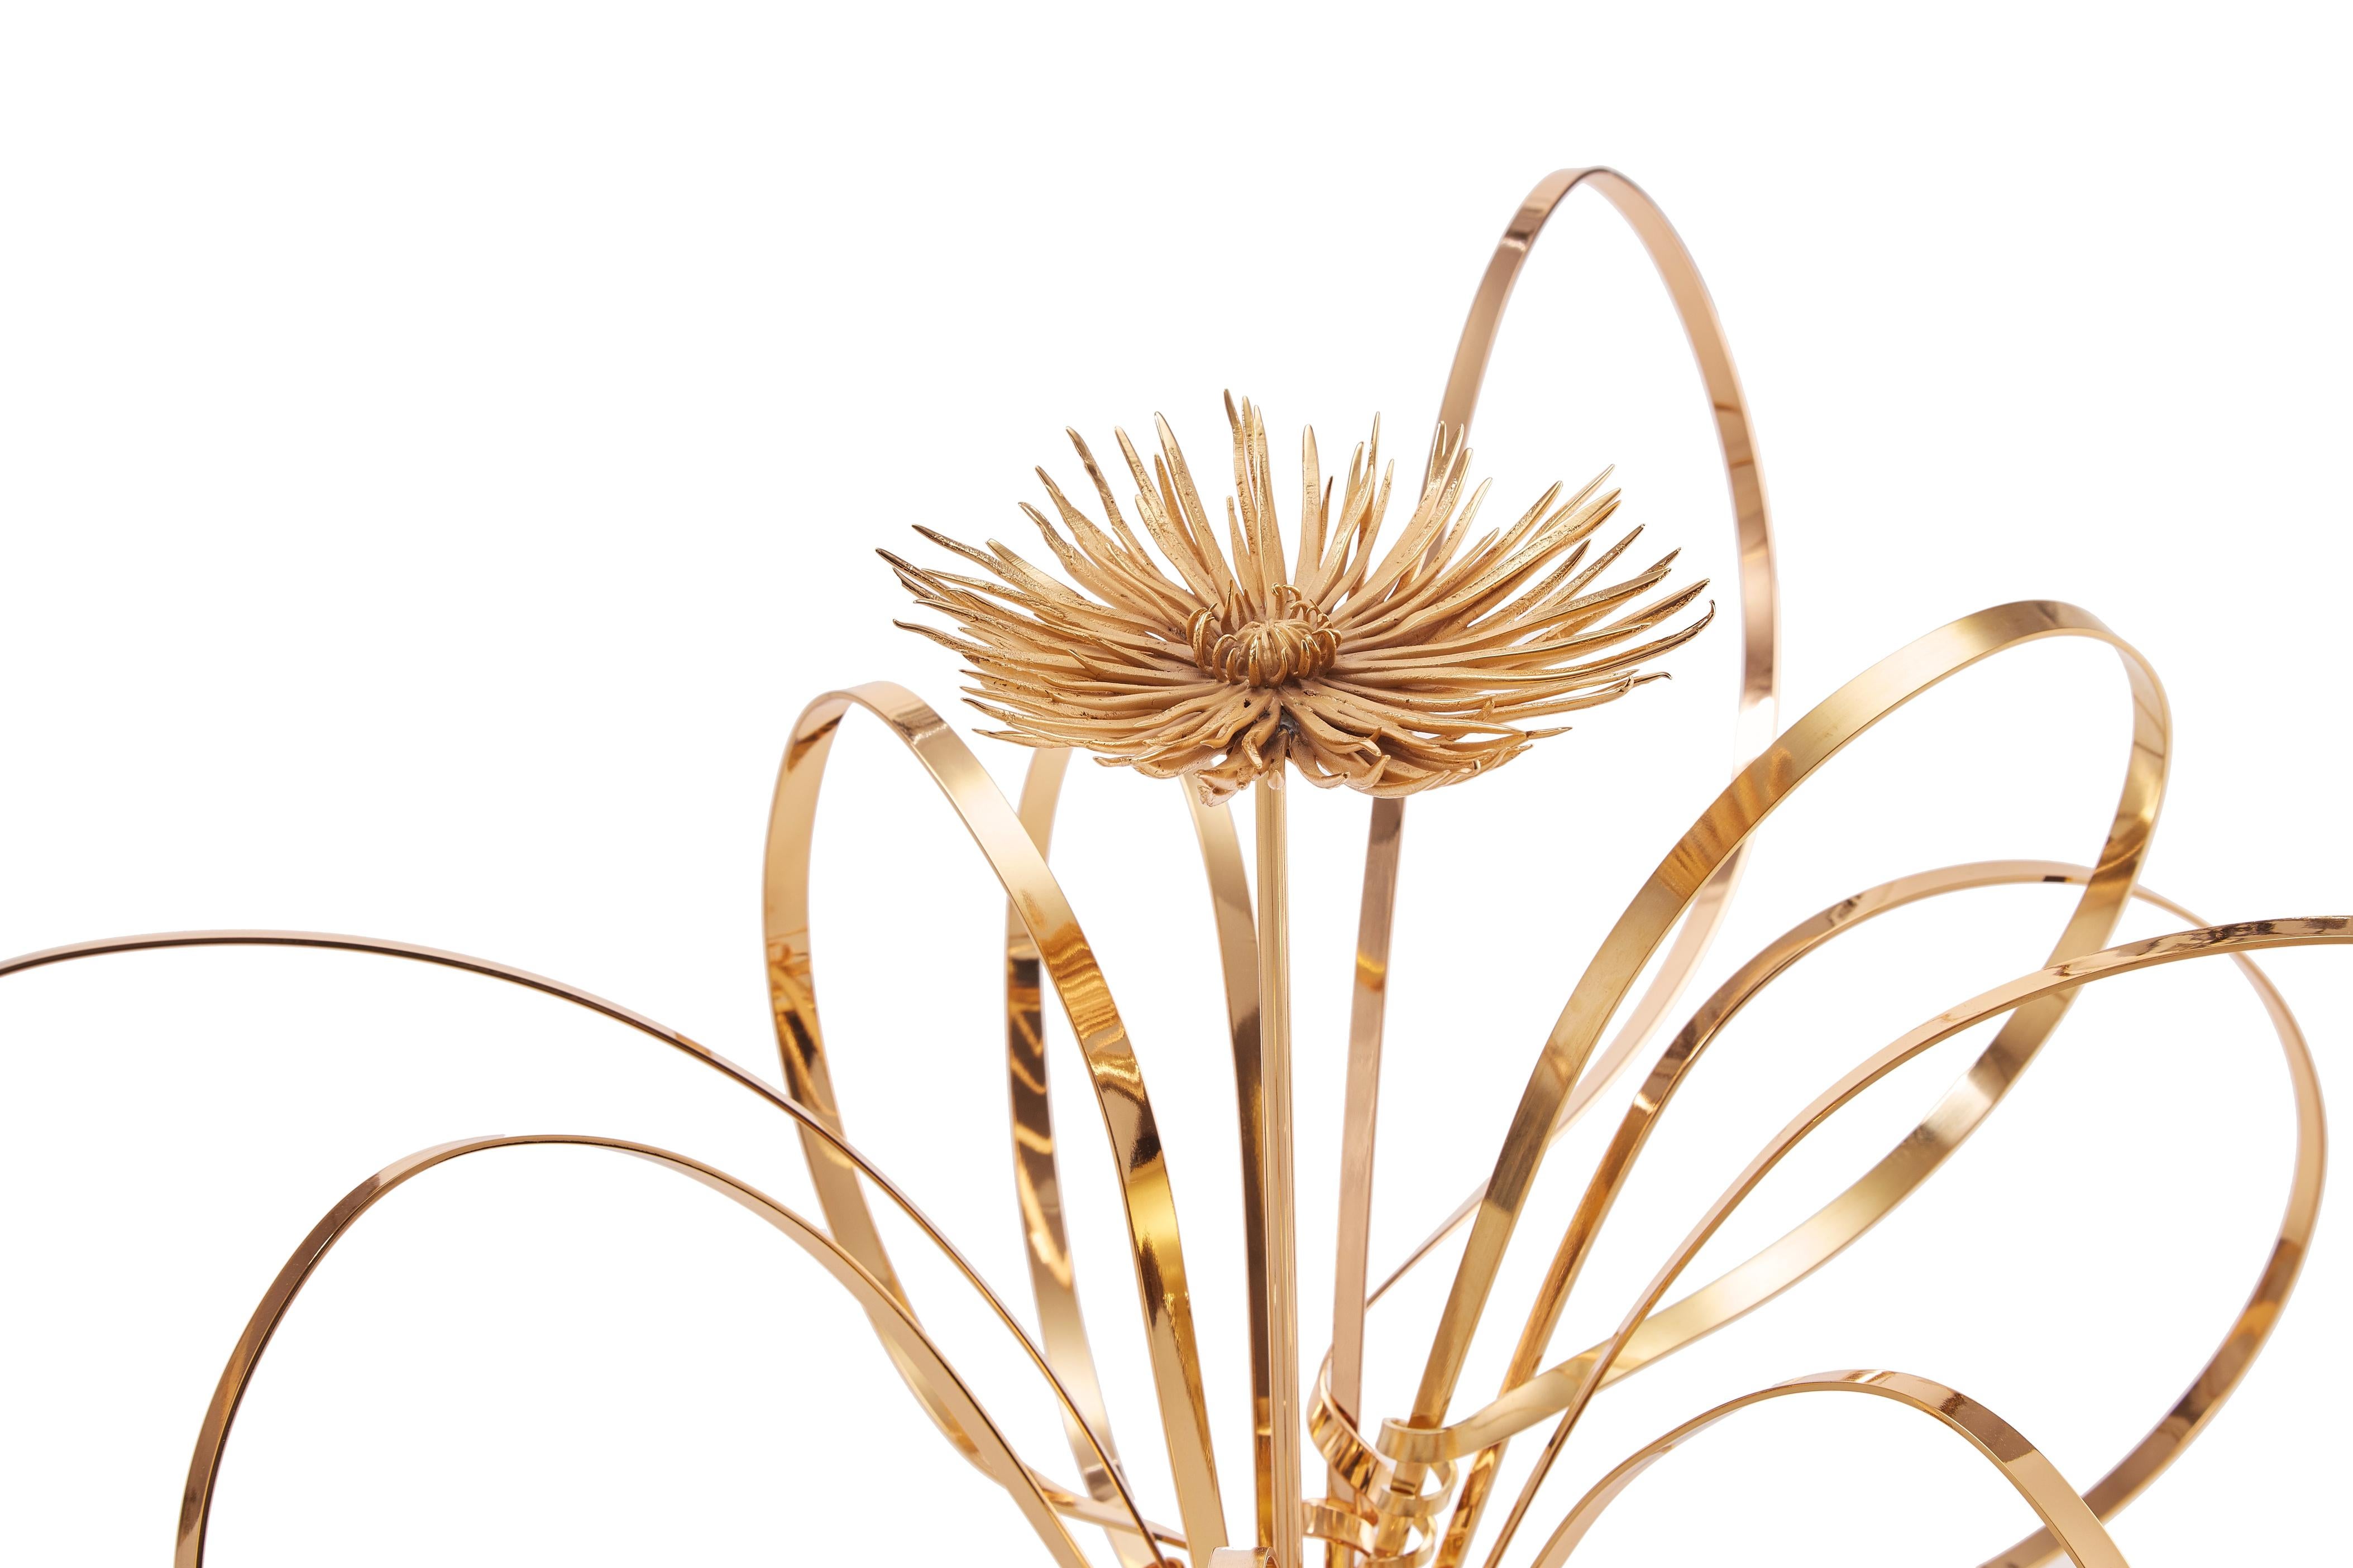 Post-Modern Golden Swirls and Mum Sculpture by Art Flower Maker